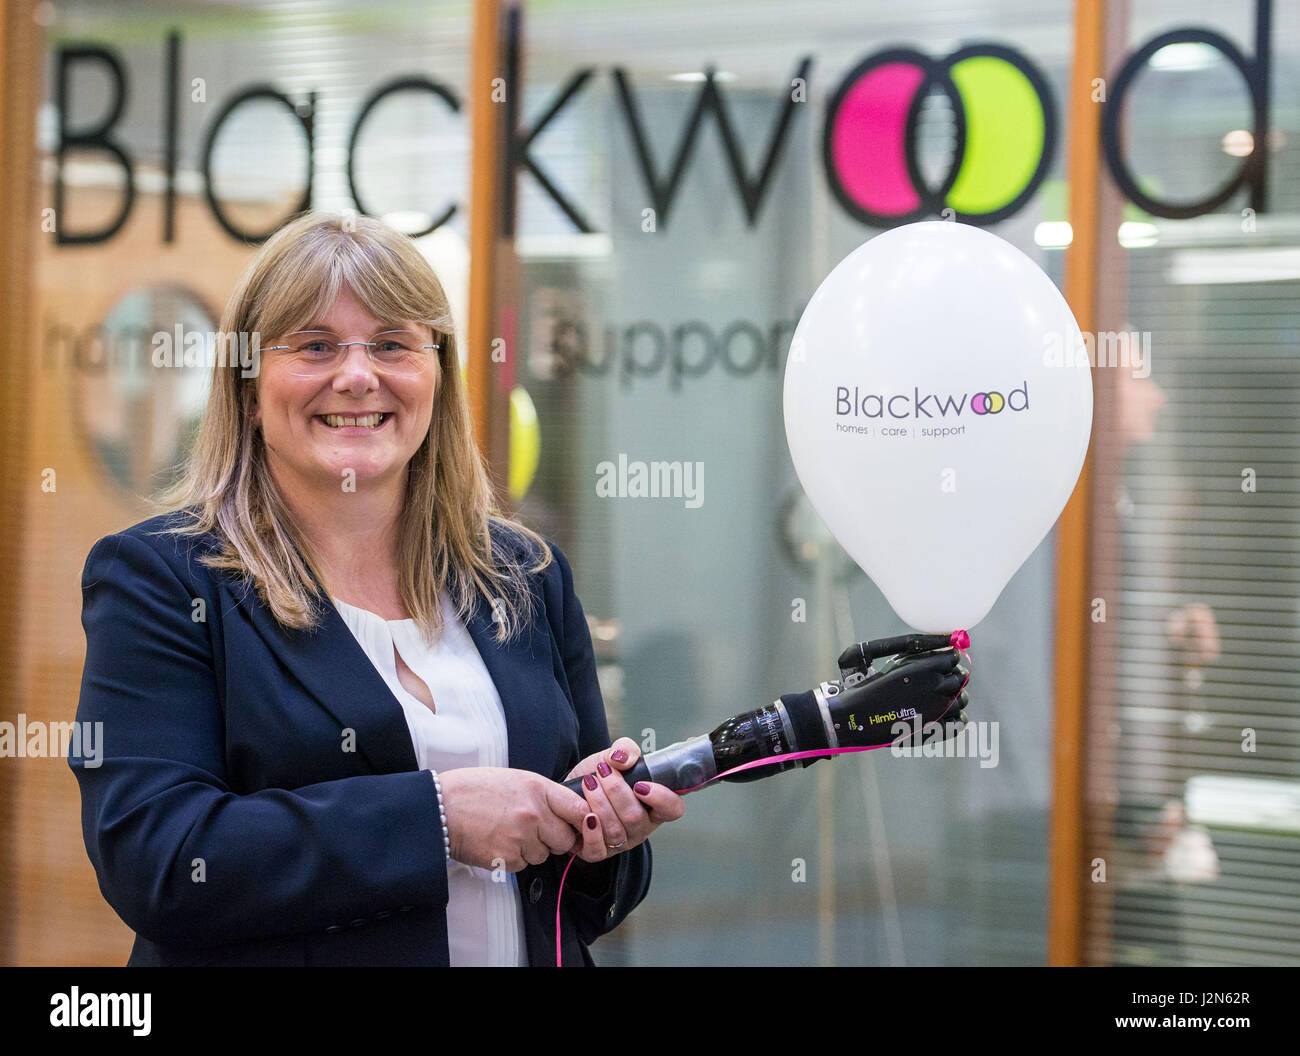 El fotógrafo Ian Georgeson, 07921 567360 Sally Bowie marketing manager de Touch Bionics en la inauguración de las nuevas oficinas de atención y apoyo Blackwood un Foto de stock